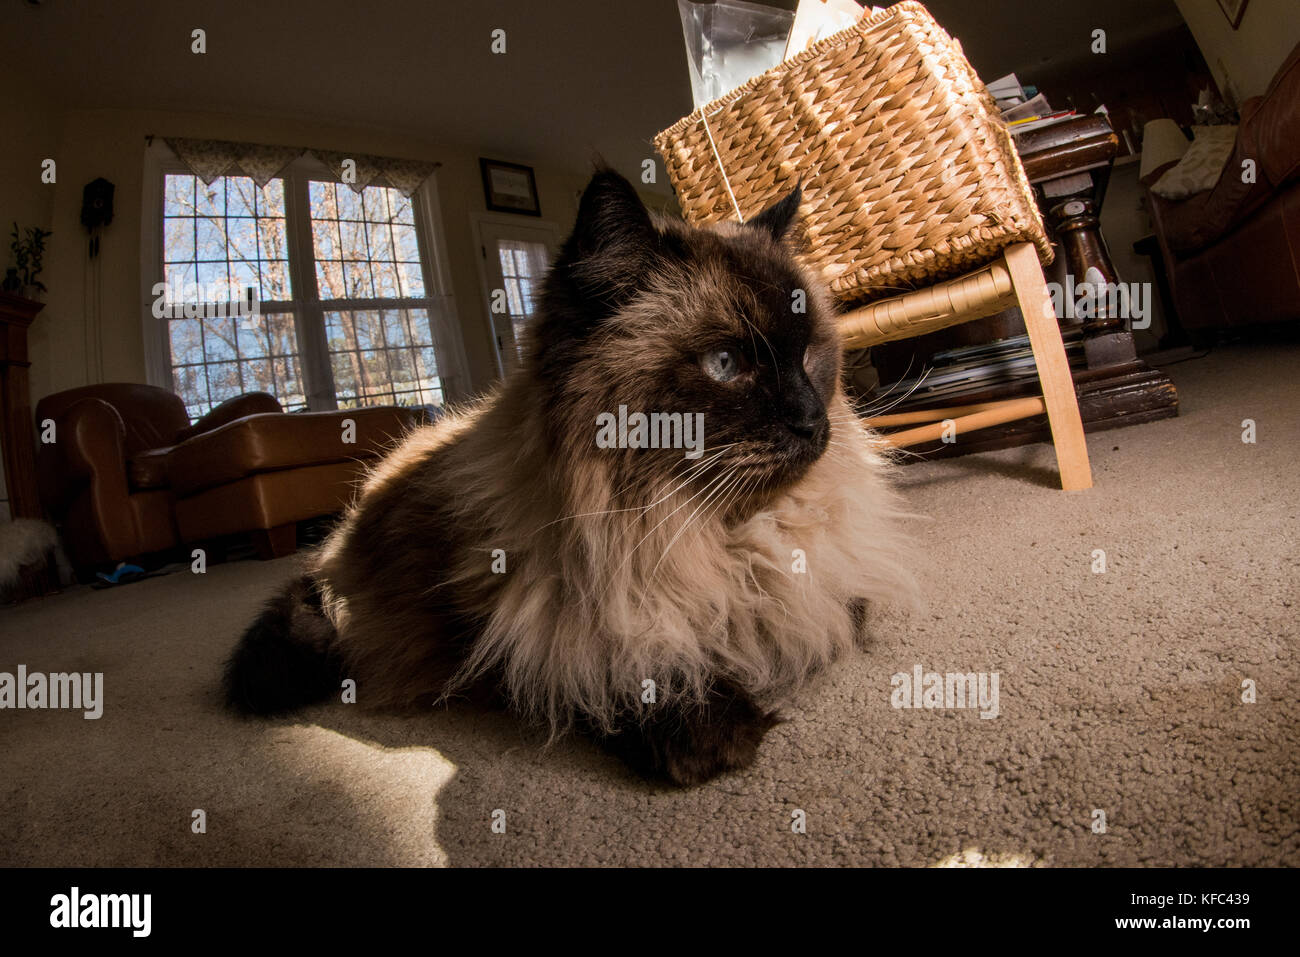 Un chat siamois Himalaya amuse et portant sur l'intérieur de la maison. Banque D'Images